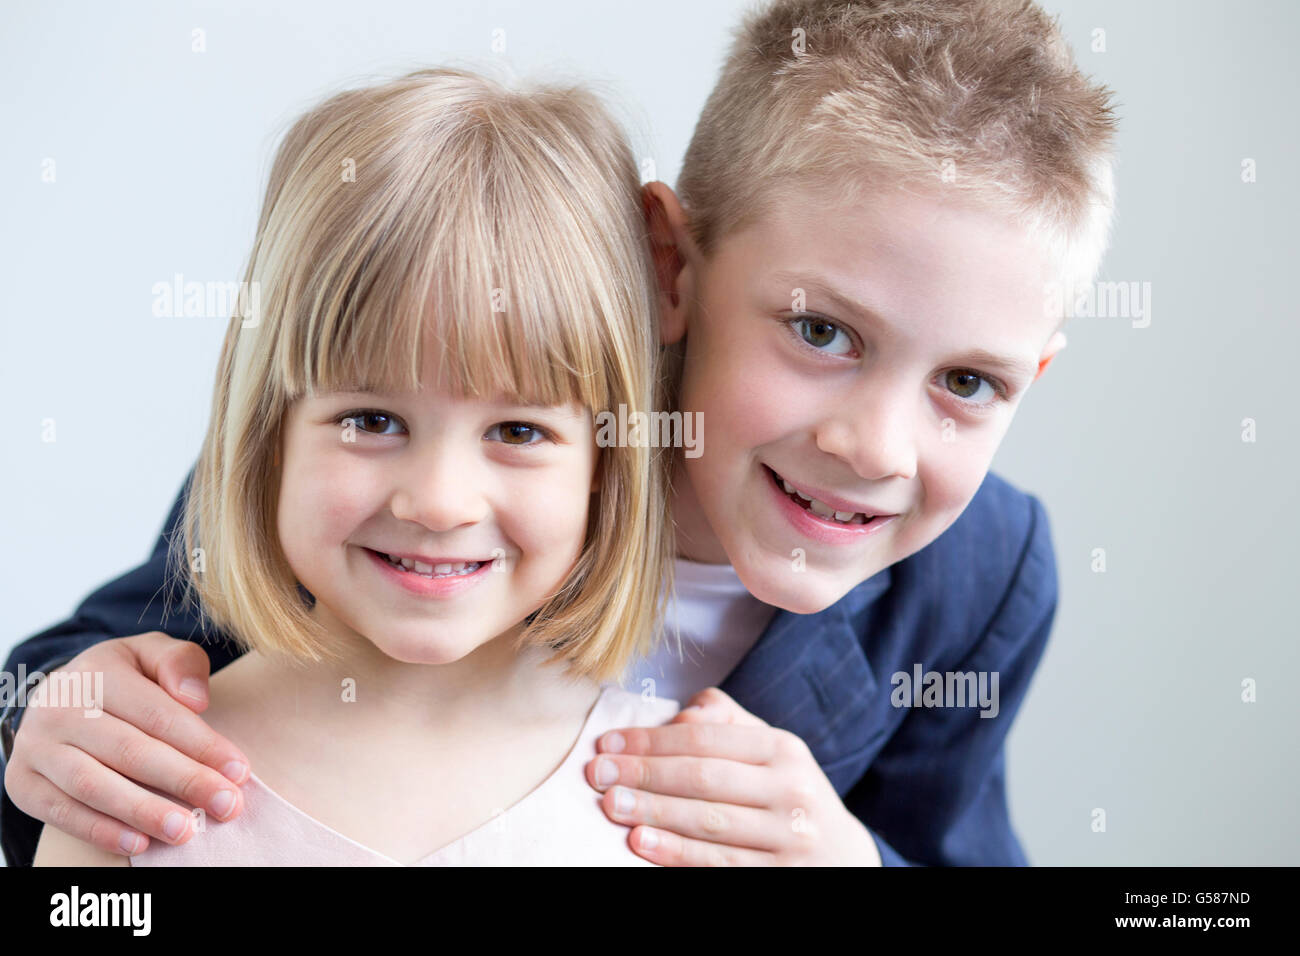 Jeune garçon et fille habillé formellement et qui pose pour l'ensemble de l'appareil photo sur un fond blanc Banque D'Images